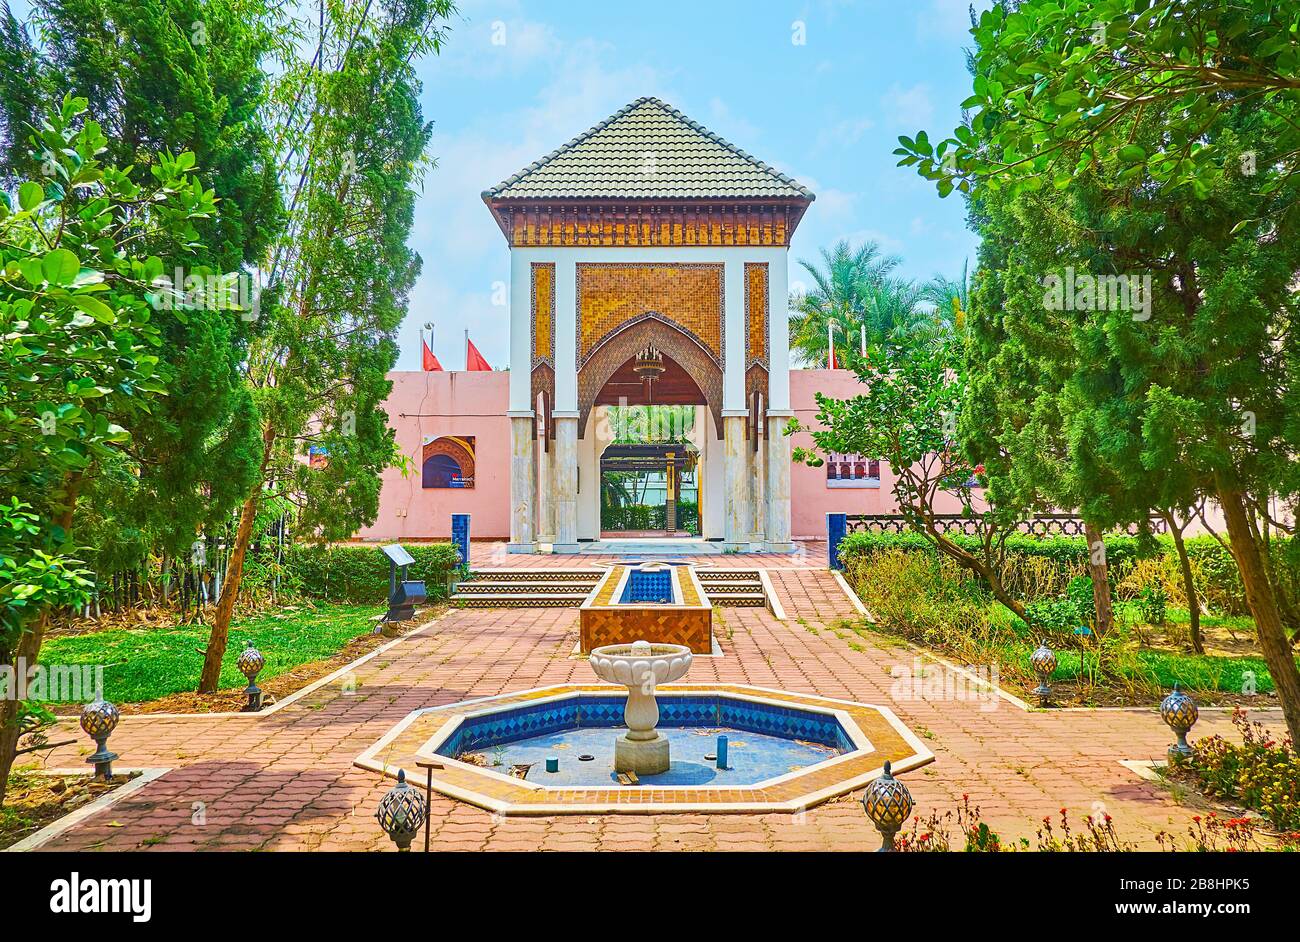 CHIANG mai, THAILANDIA - 7 MAGGIO 2019: Il giardino marocchino del parco reale Rajapruek è decorato con dettagli architettonici tradizionali - fontana, fortini Foto Stock